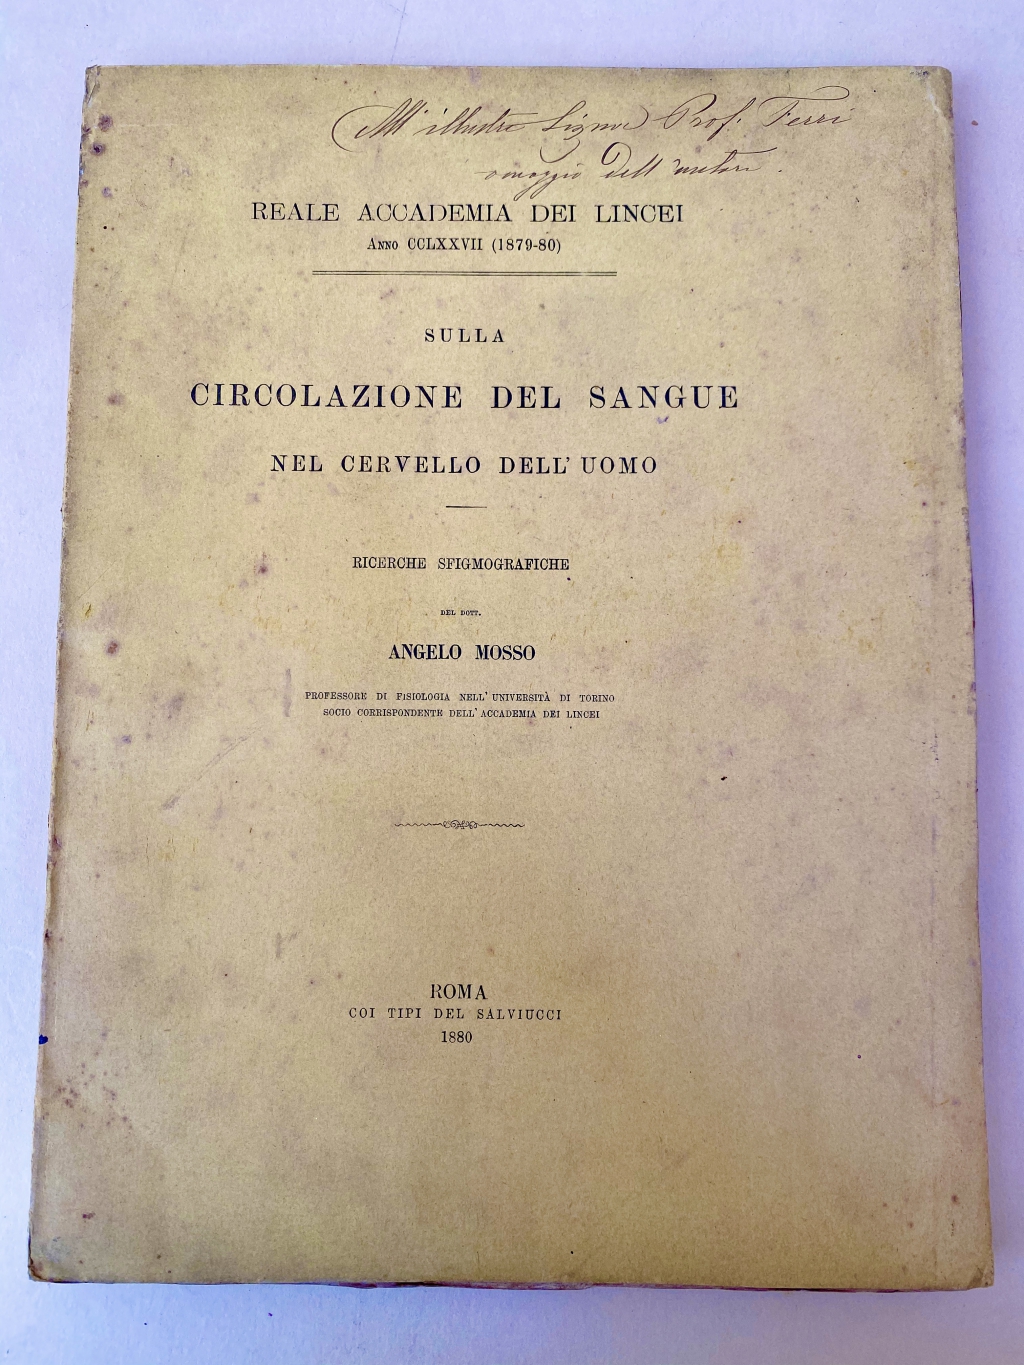 Cover of a copy of Mosso's Sulla circulazione del sangue inscribed by the author.